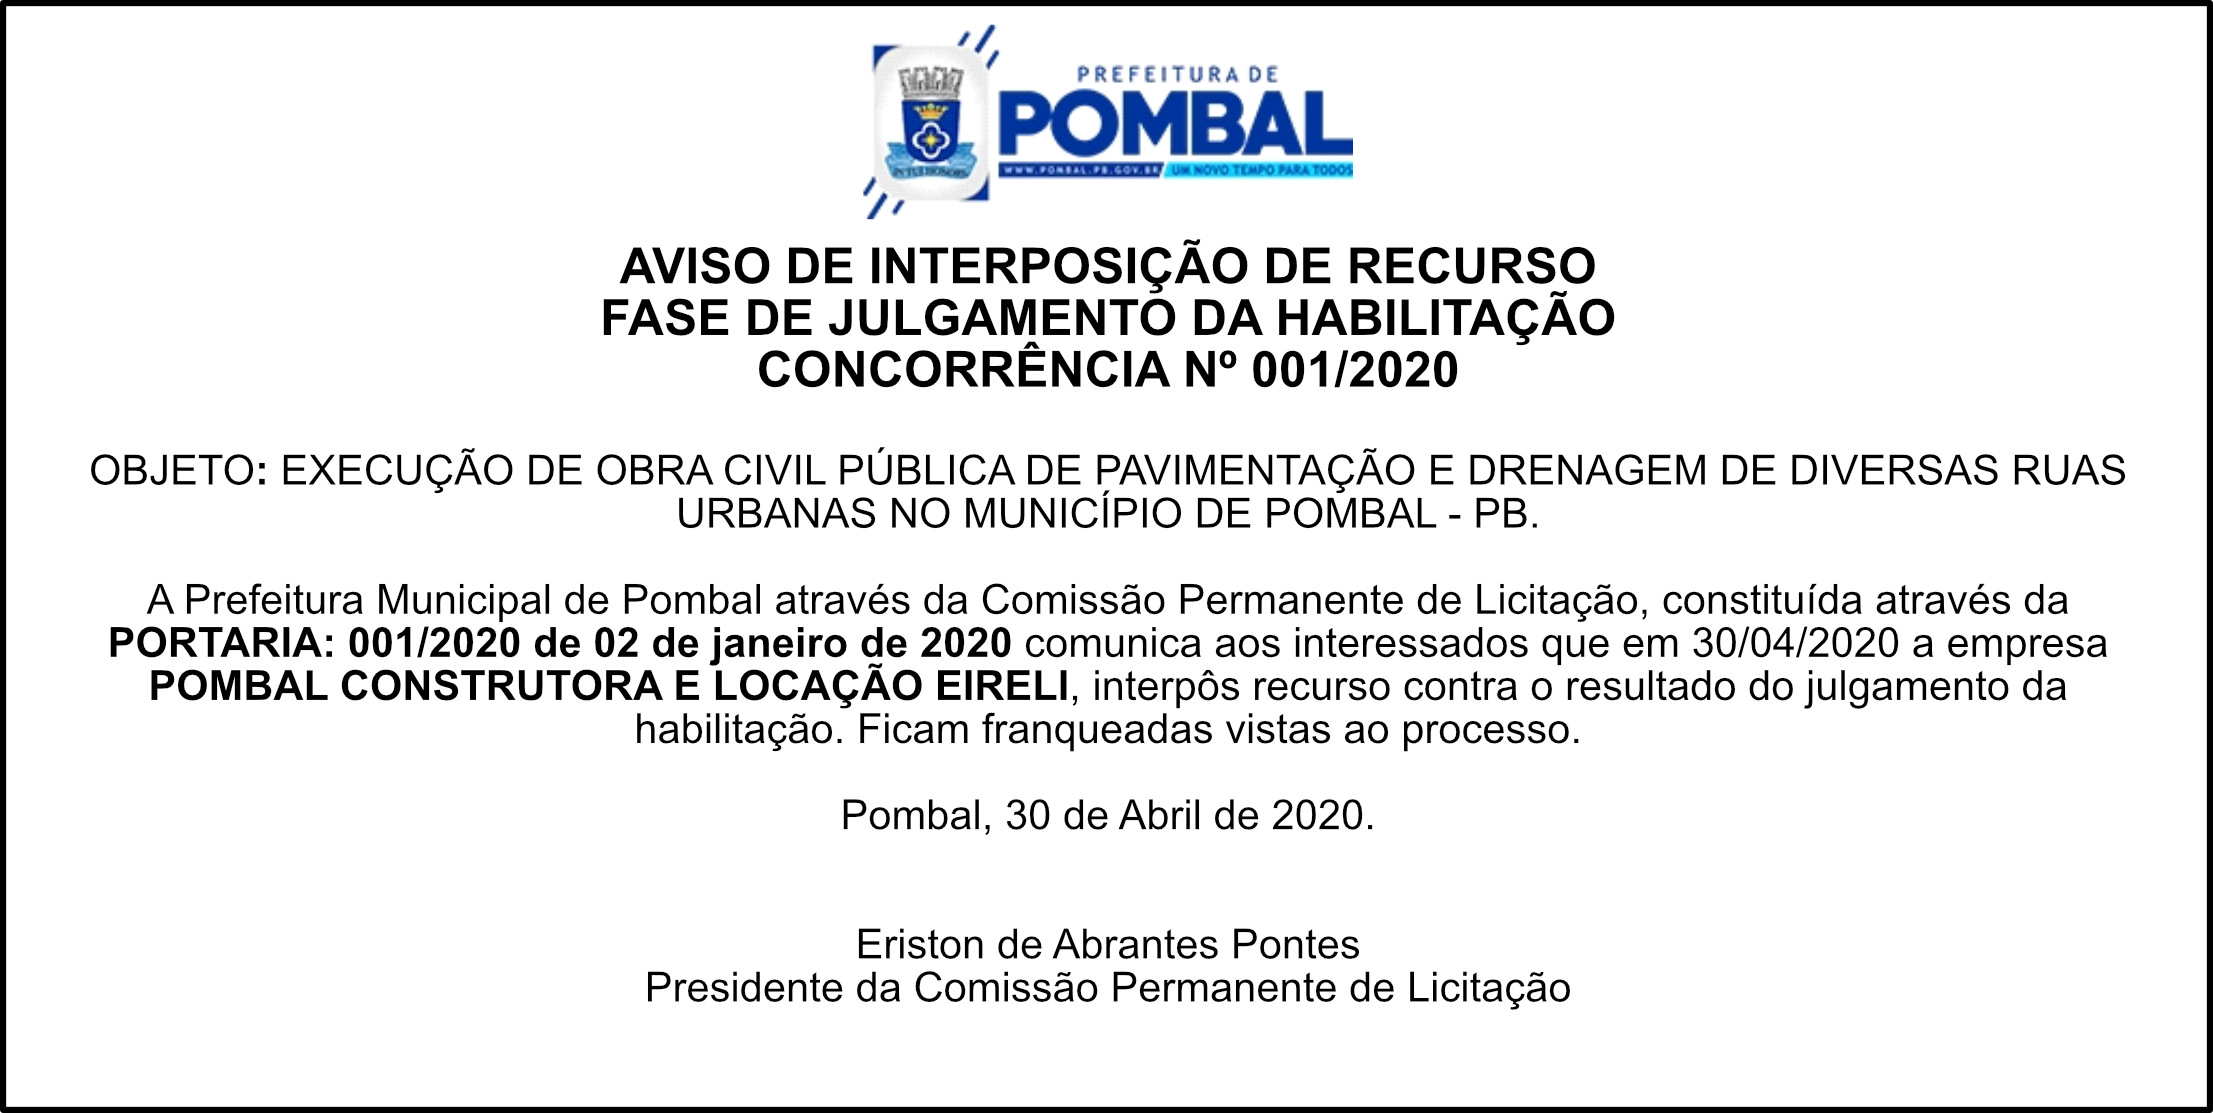 PREF. MUN. DE POMBAL – AVISO DE INTERPOSIÇÃO DE RECURSO – CONCORRÊNCIA Nº 001/2020